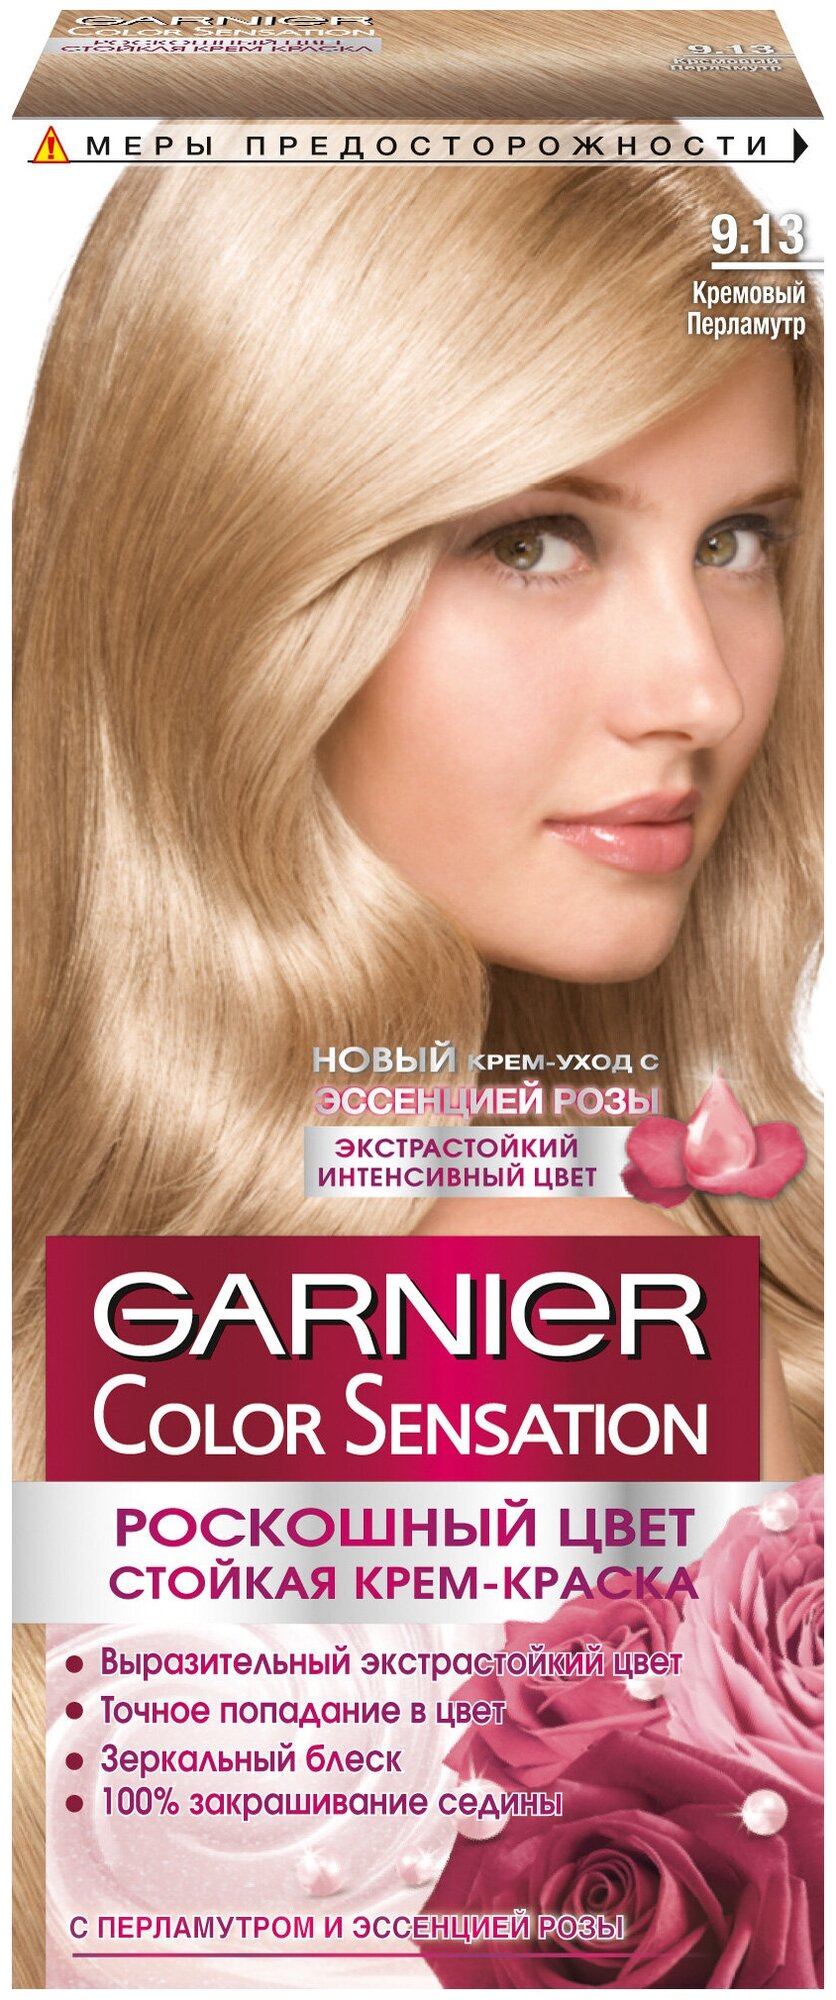 GARNIER Color Sensation стойкая крем-краска для волос, 9.13 кремовый перламутр